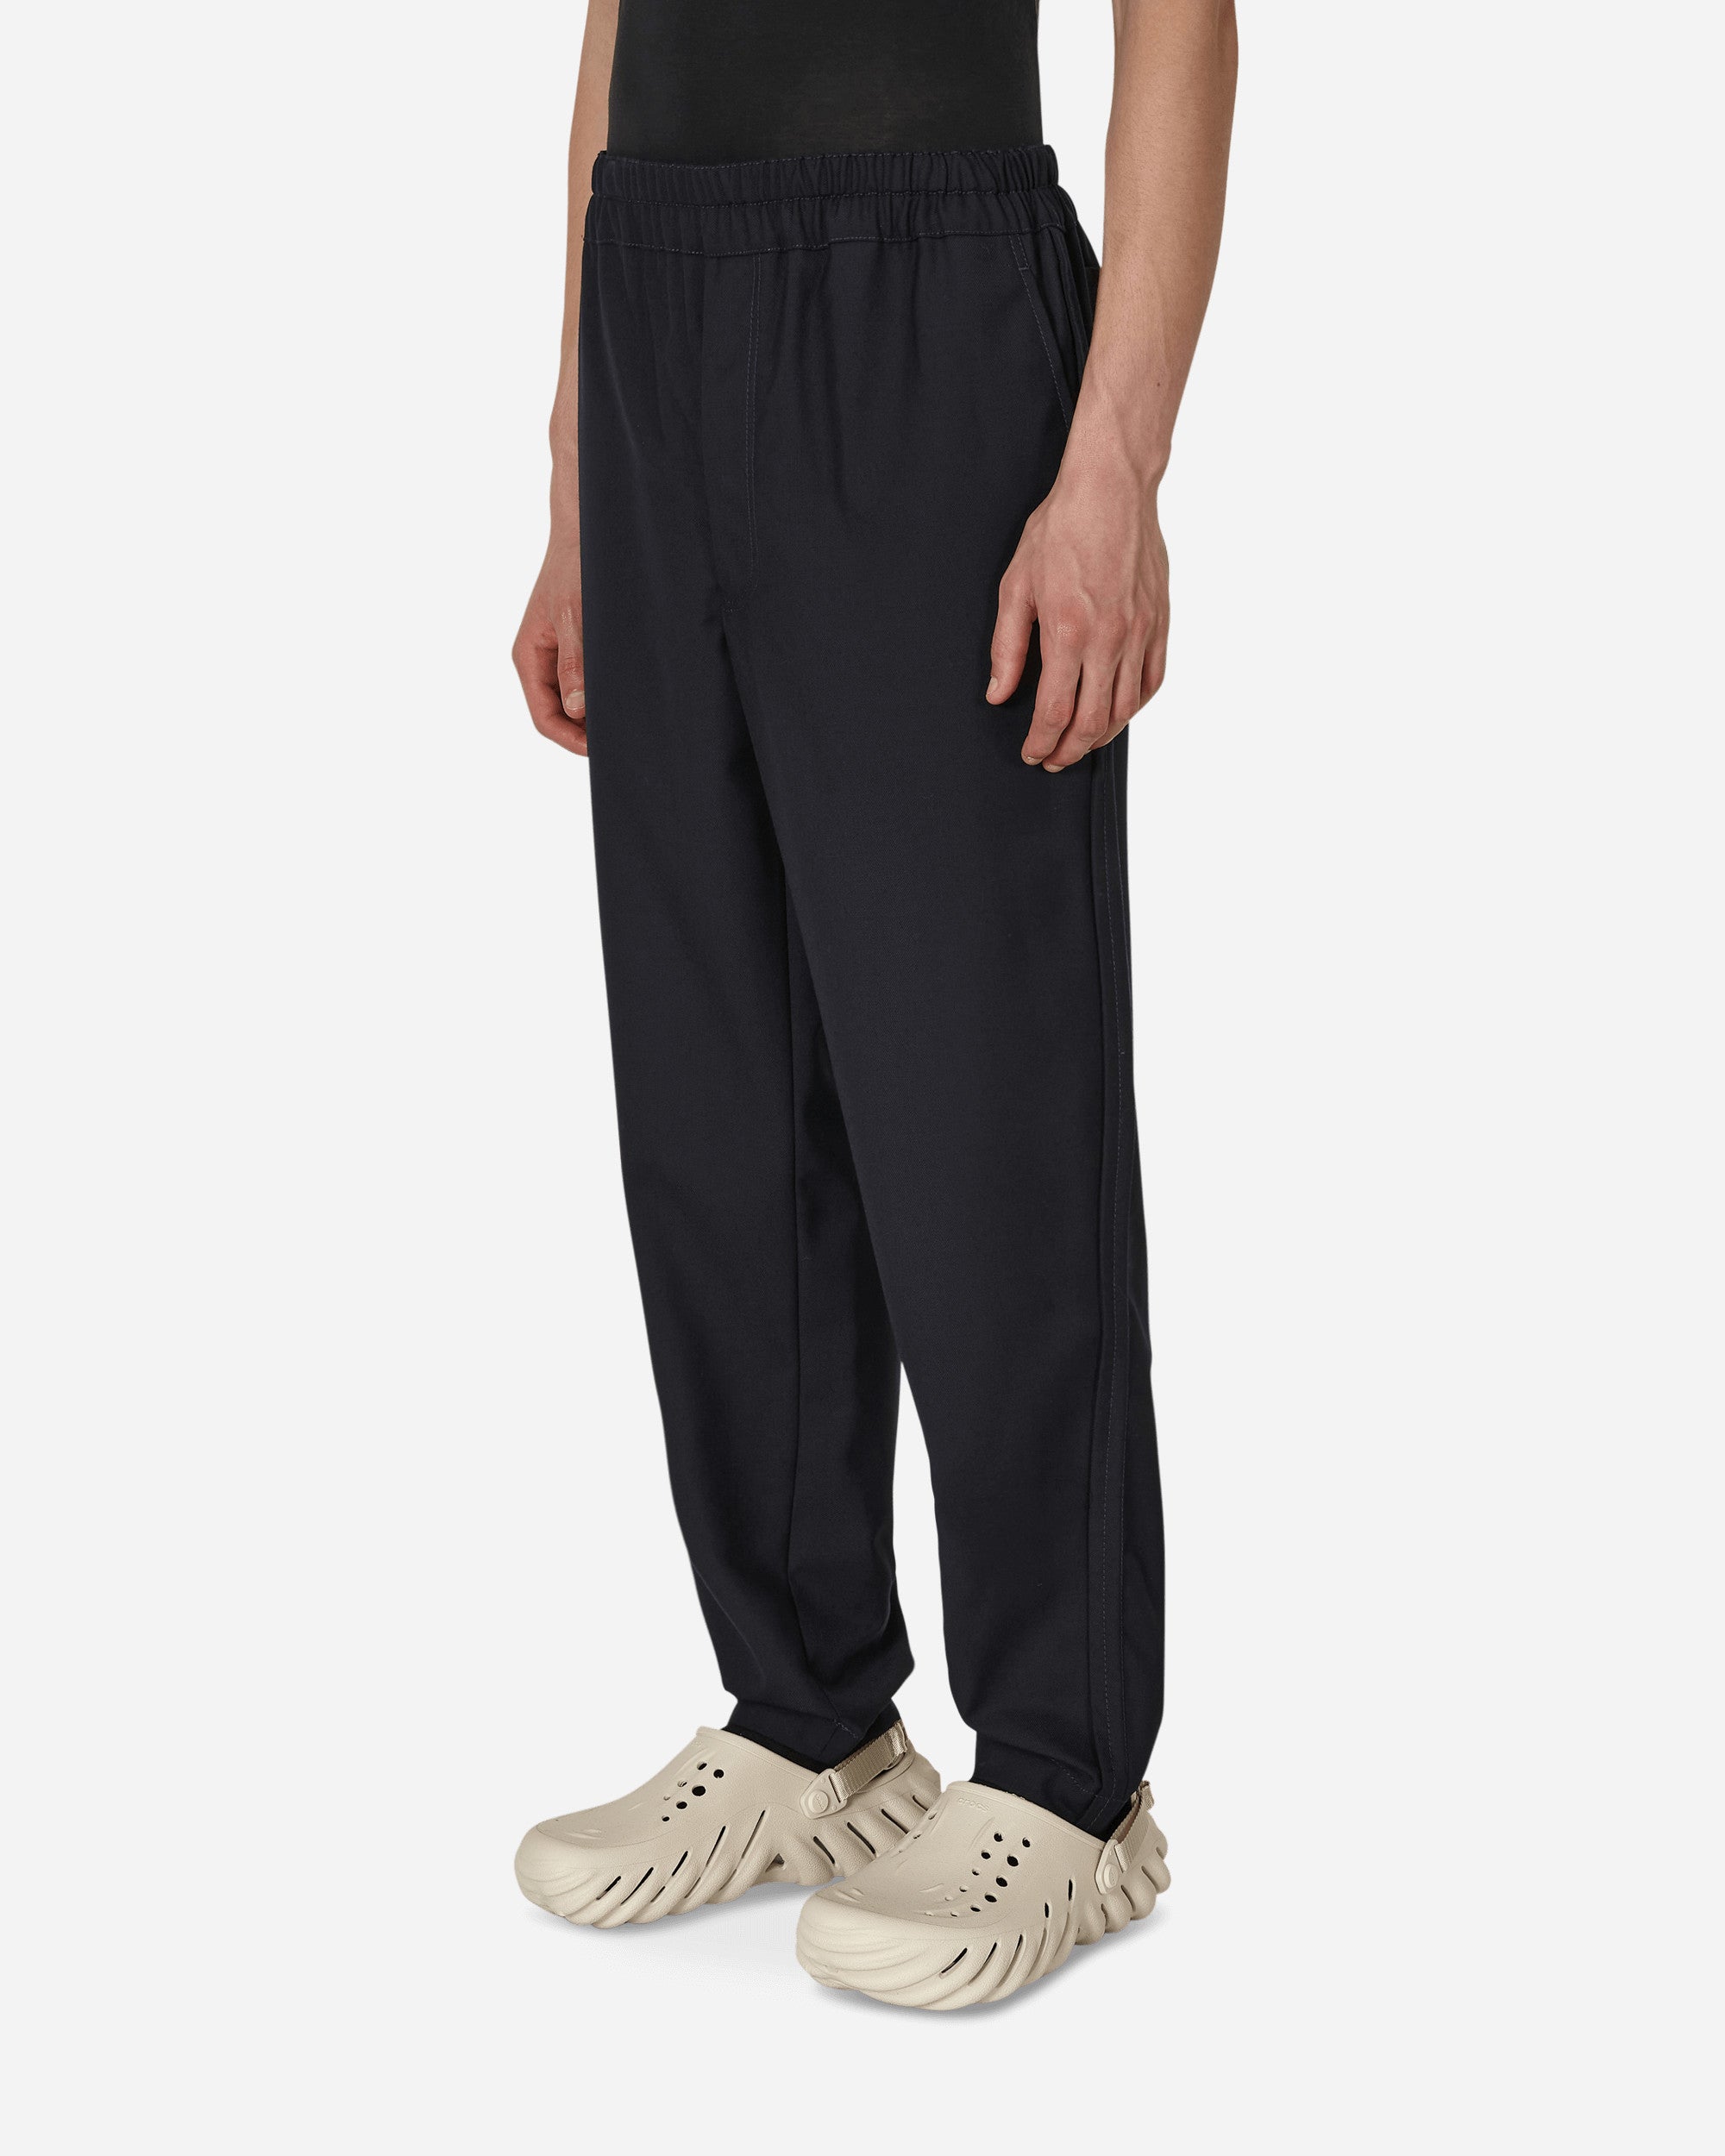 Comme Des Garçons Shirt Mens Pants Woven Navy Pants Trousers FJ-P008-W22 2